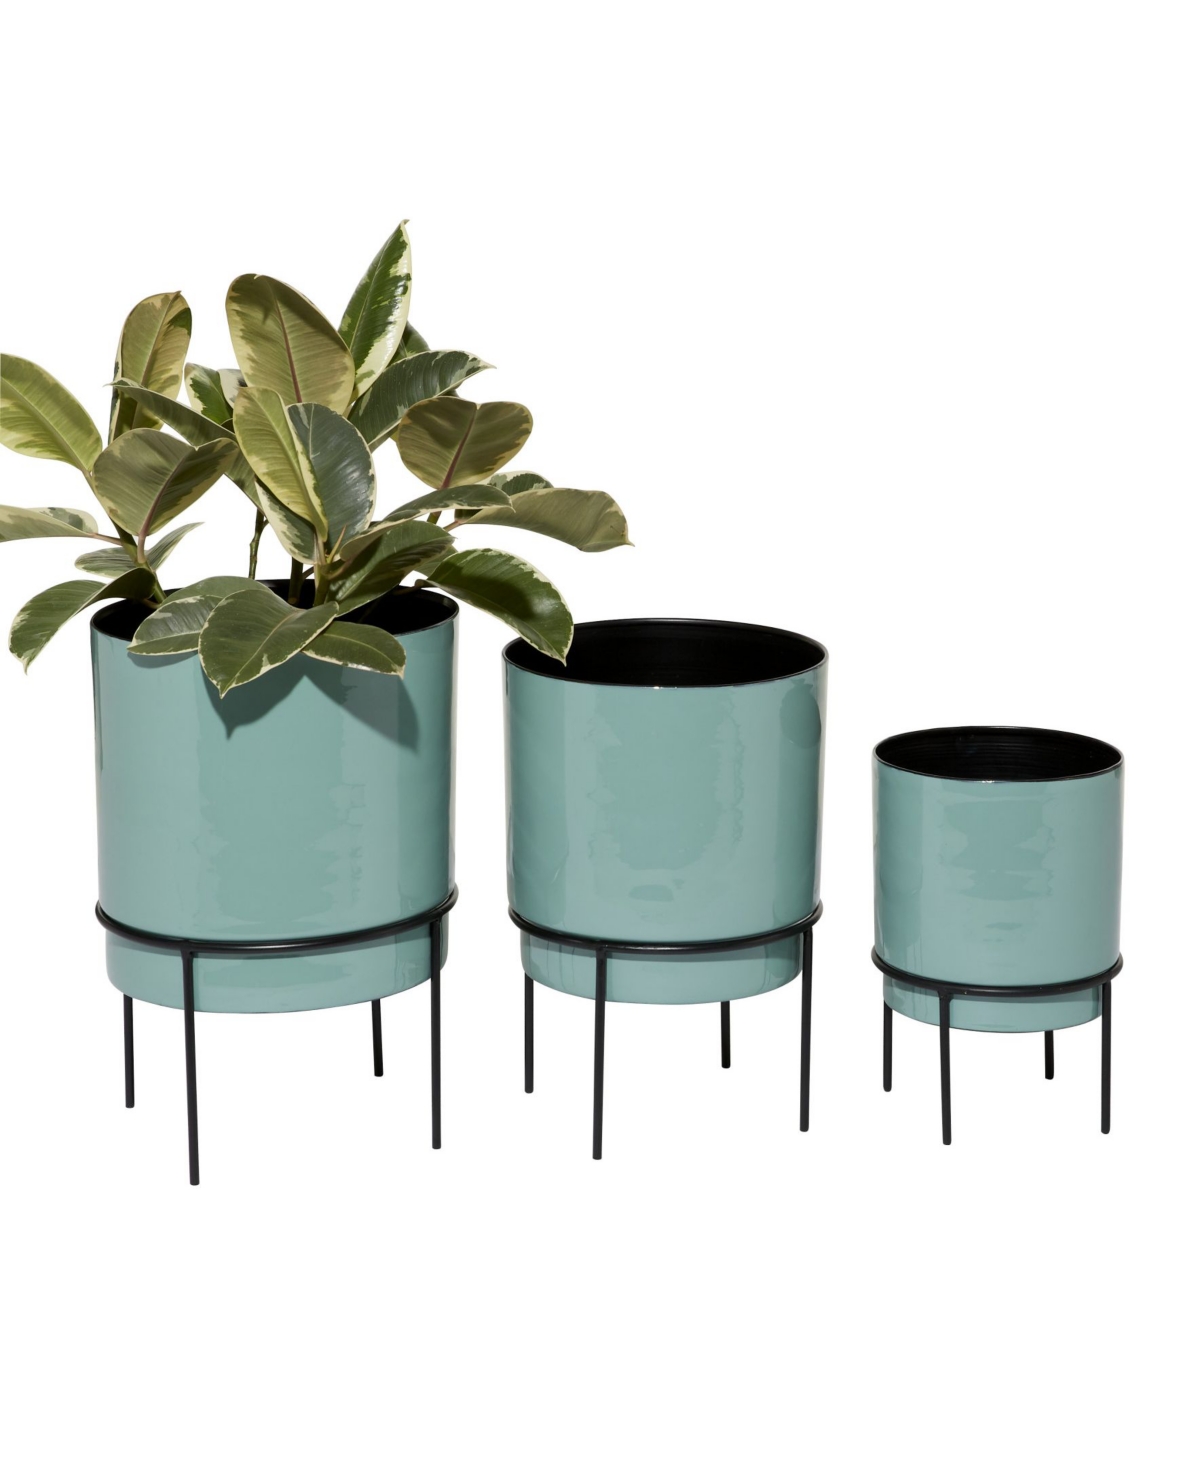 Set of 3 Teal Metal Contemporary Planter - Aqua